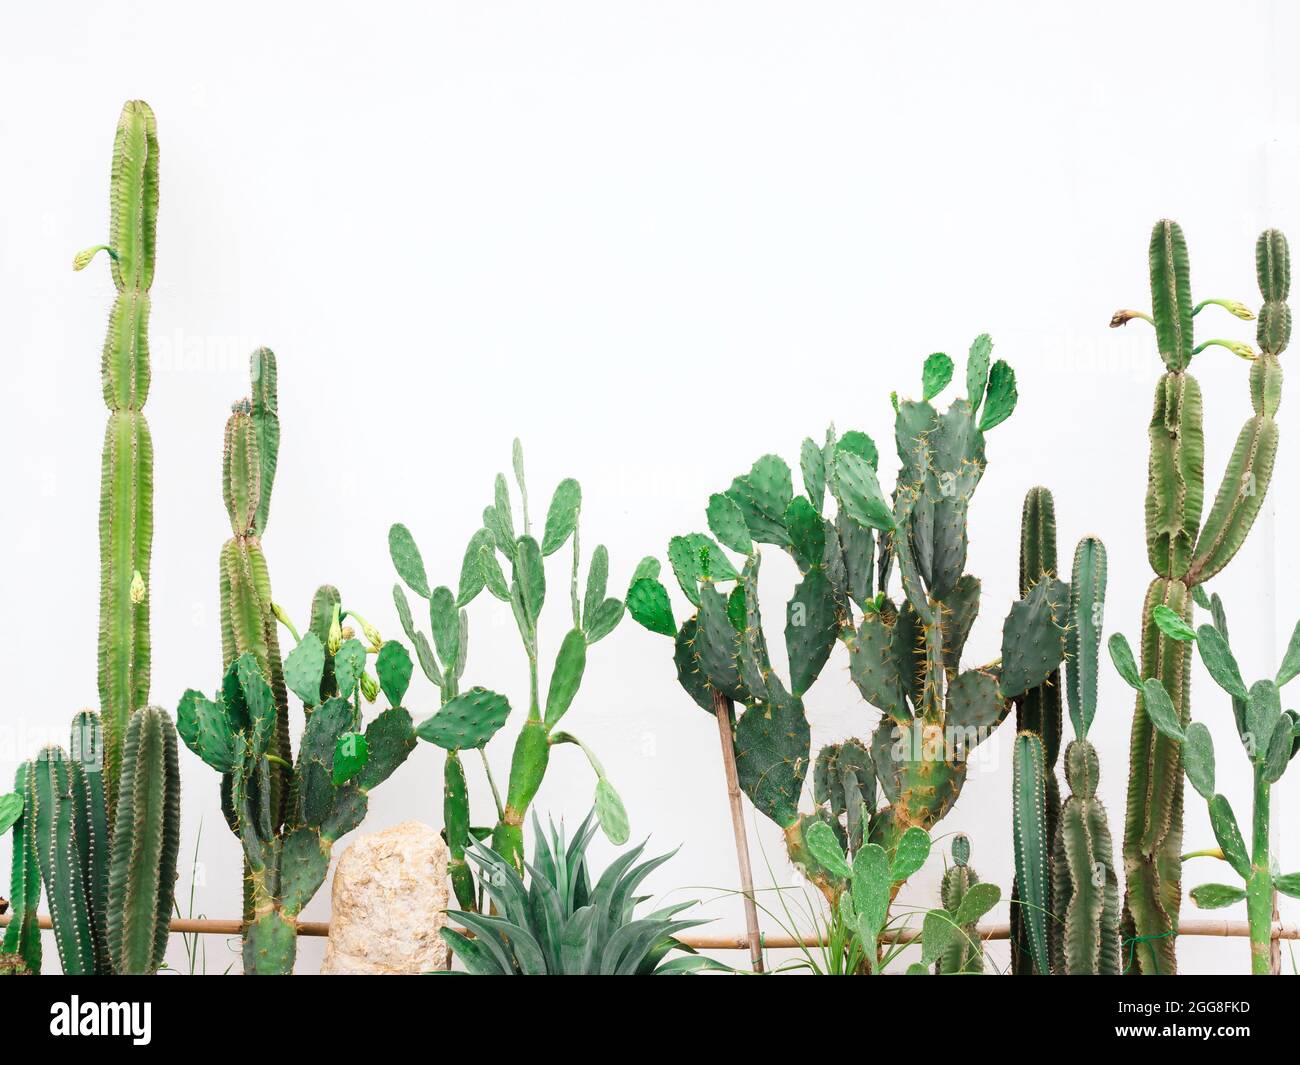 Diverses plantes de cactus vertes en croissance dans le jardin de cactus sur fond blanc. Banque D'Images